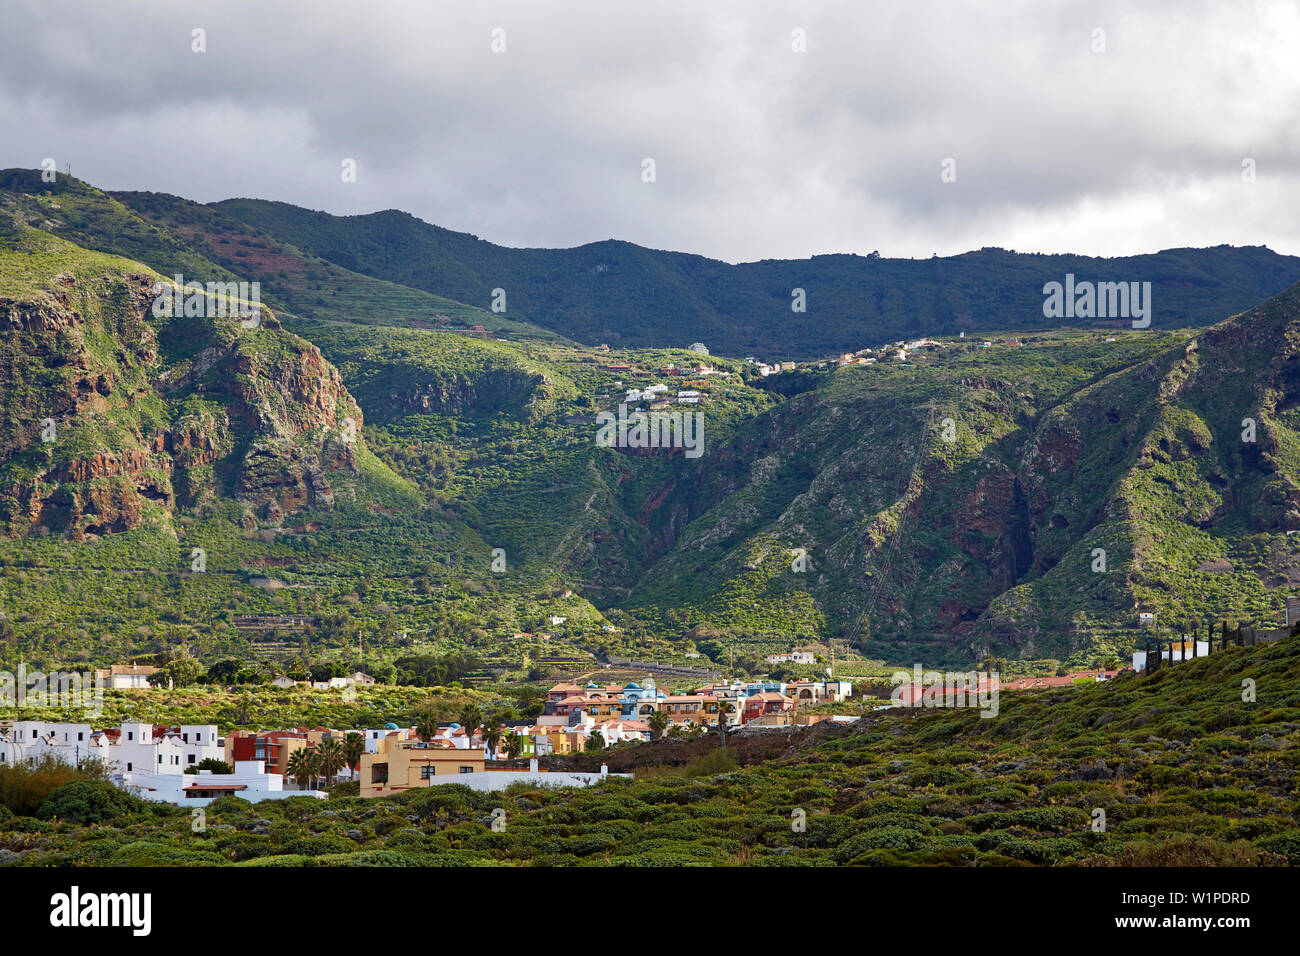 View from Puertito de los Silos across luxuriant vegetation at La Tierra del Trigo, Tenerife, Canary Islands, Islas Canarias, Atlantic Ocean, Spain, E Stock Photo